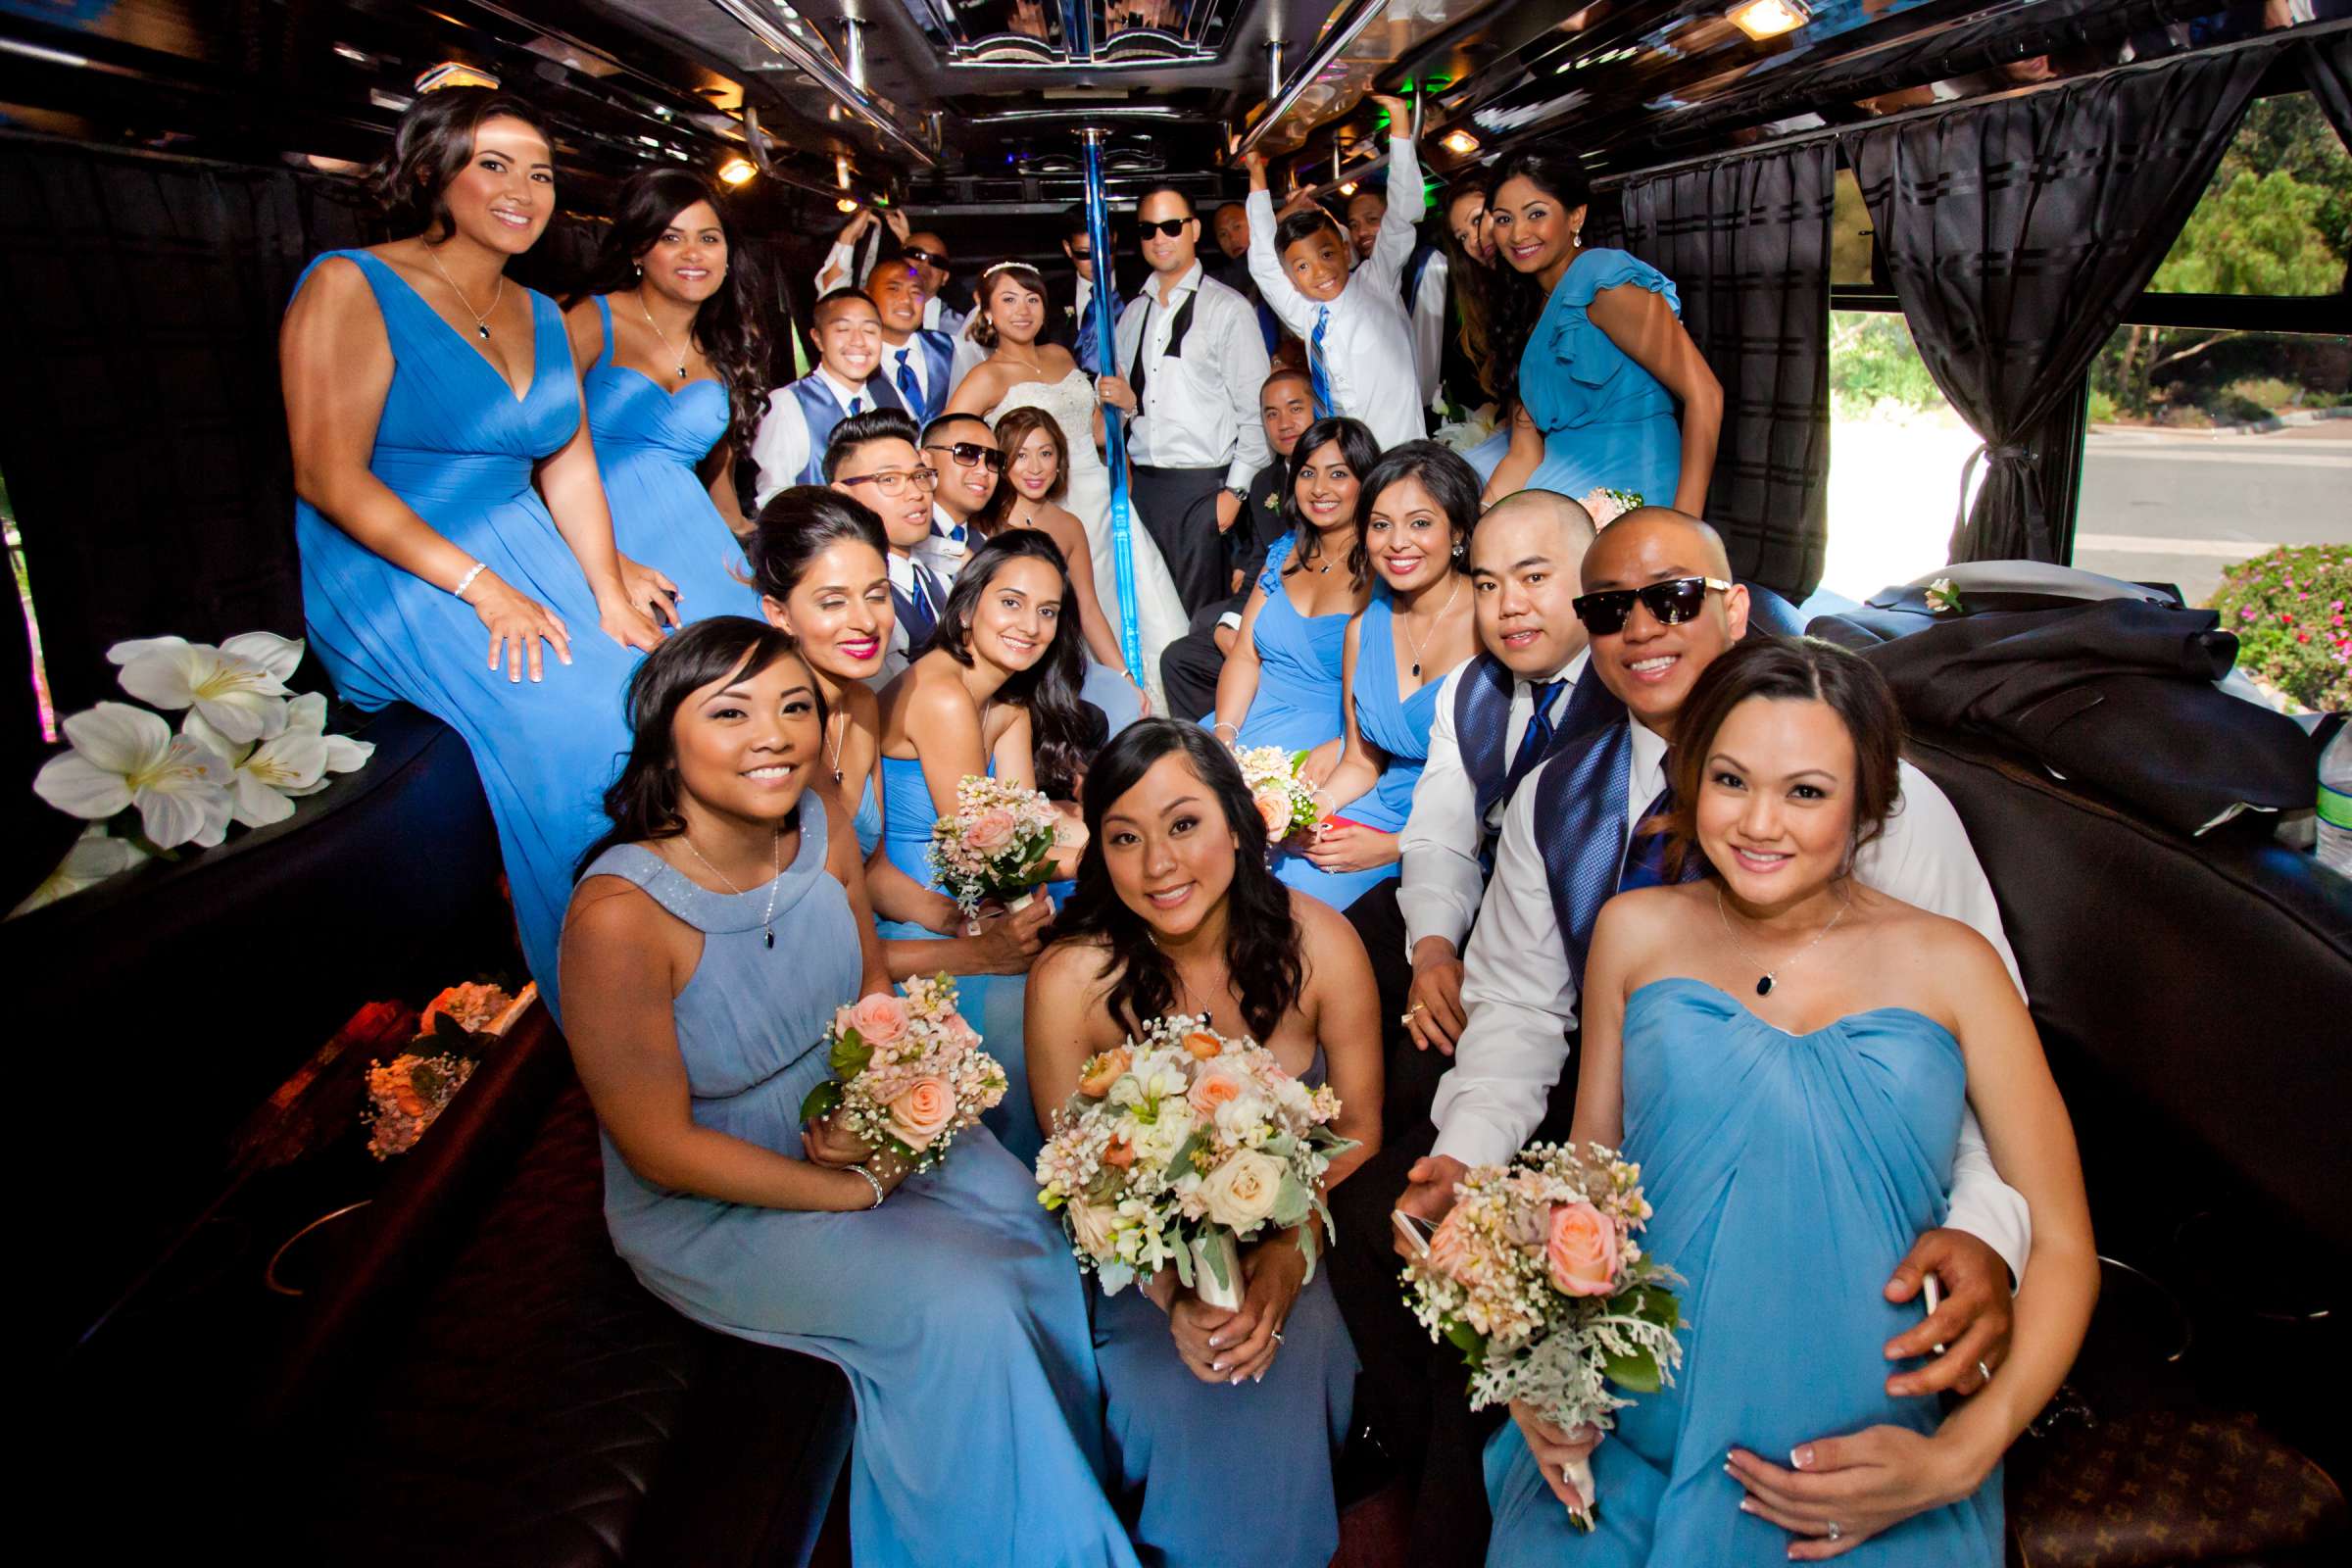 Estancia Wedding coordinated by Adrienne Almario, Shirlynn and Sean Wedding Photo #344919 by True Photography